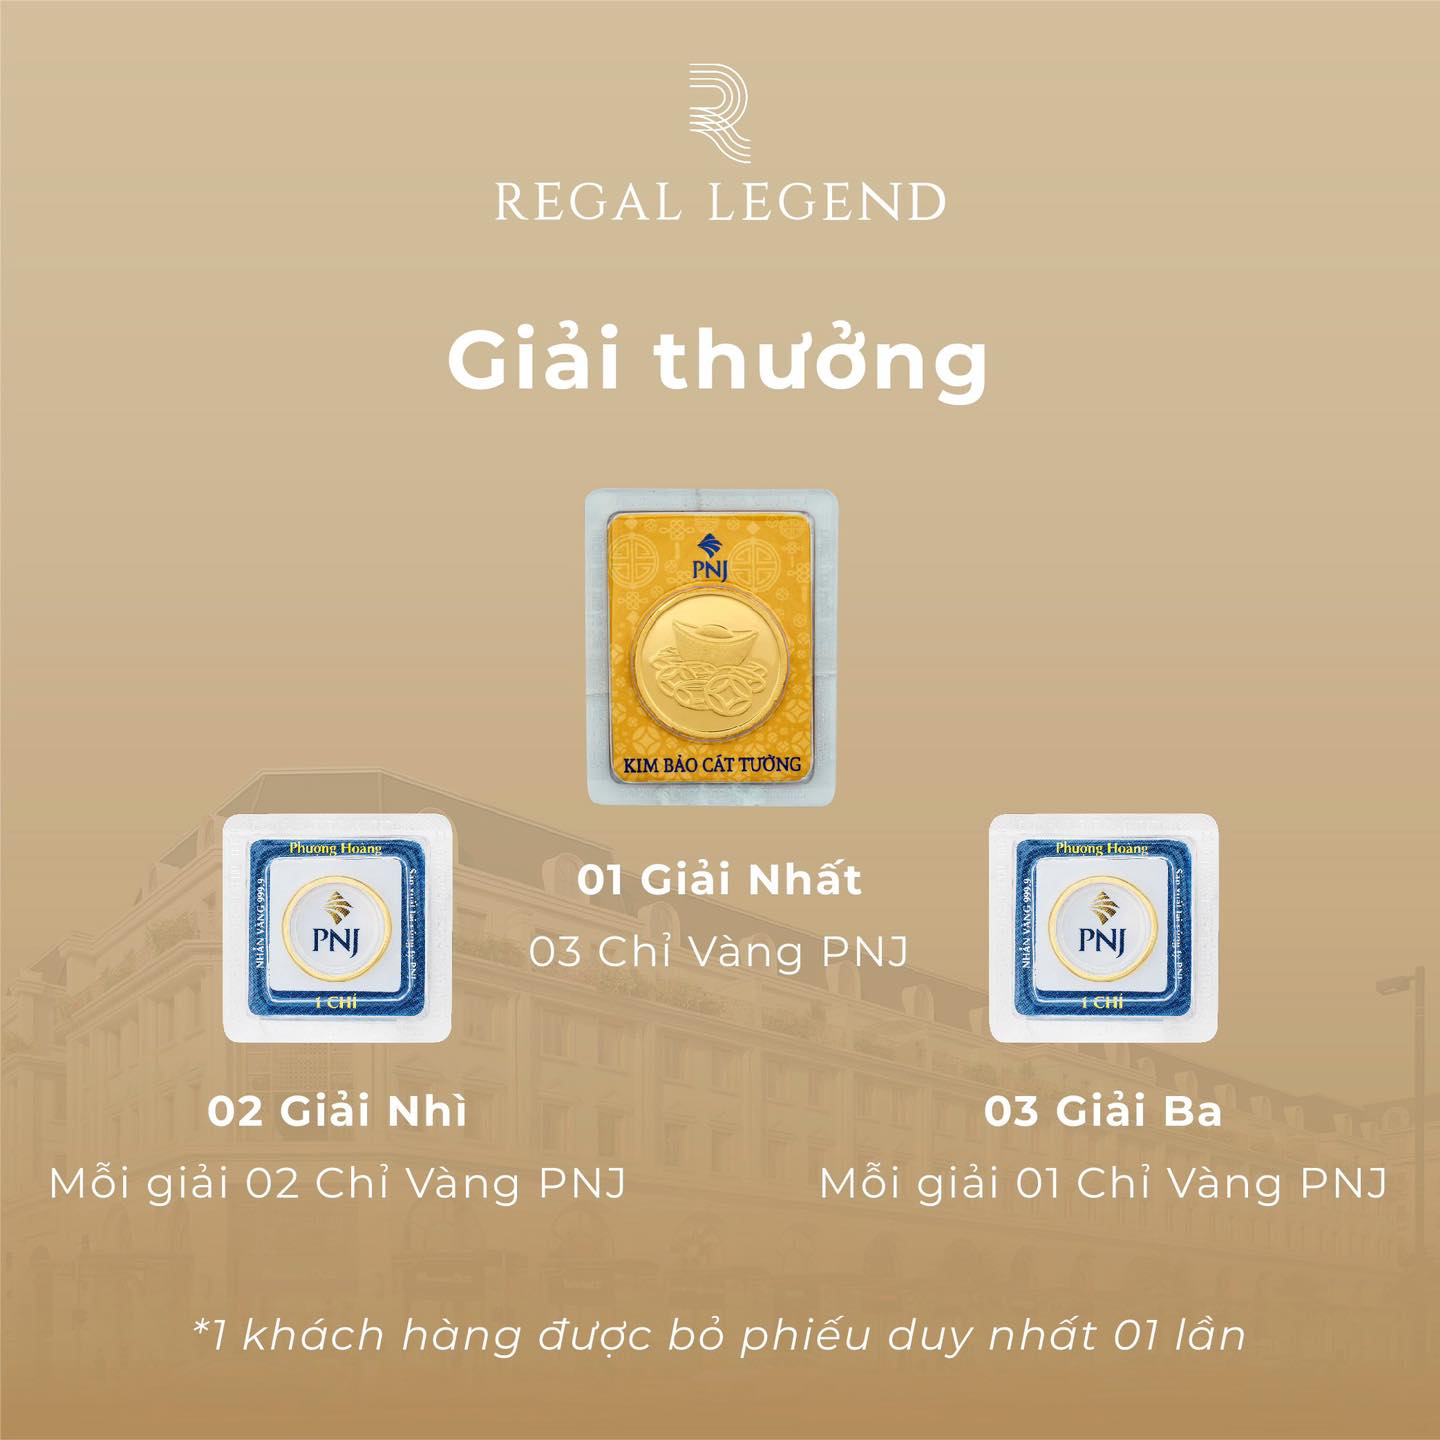 Trải nghiệm thương lưu - Nhận vàng ròng cùng Regal Legend - Viet Nam Smart City